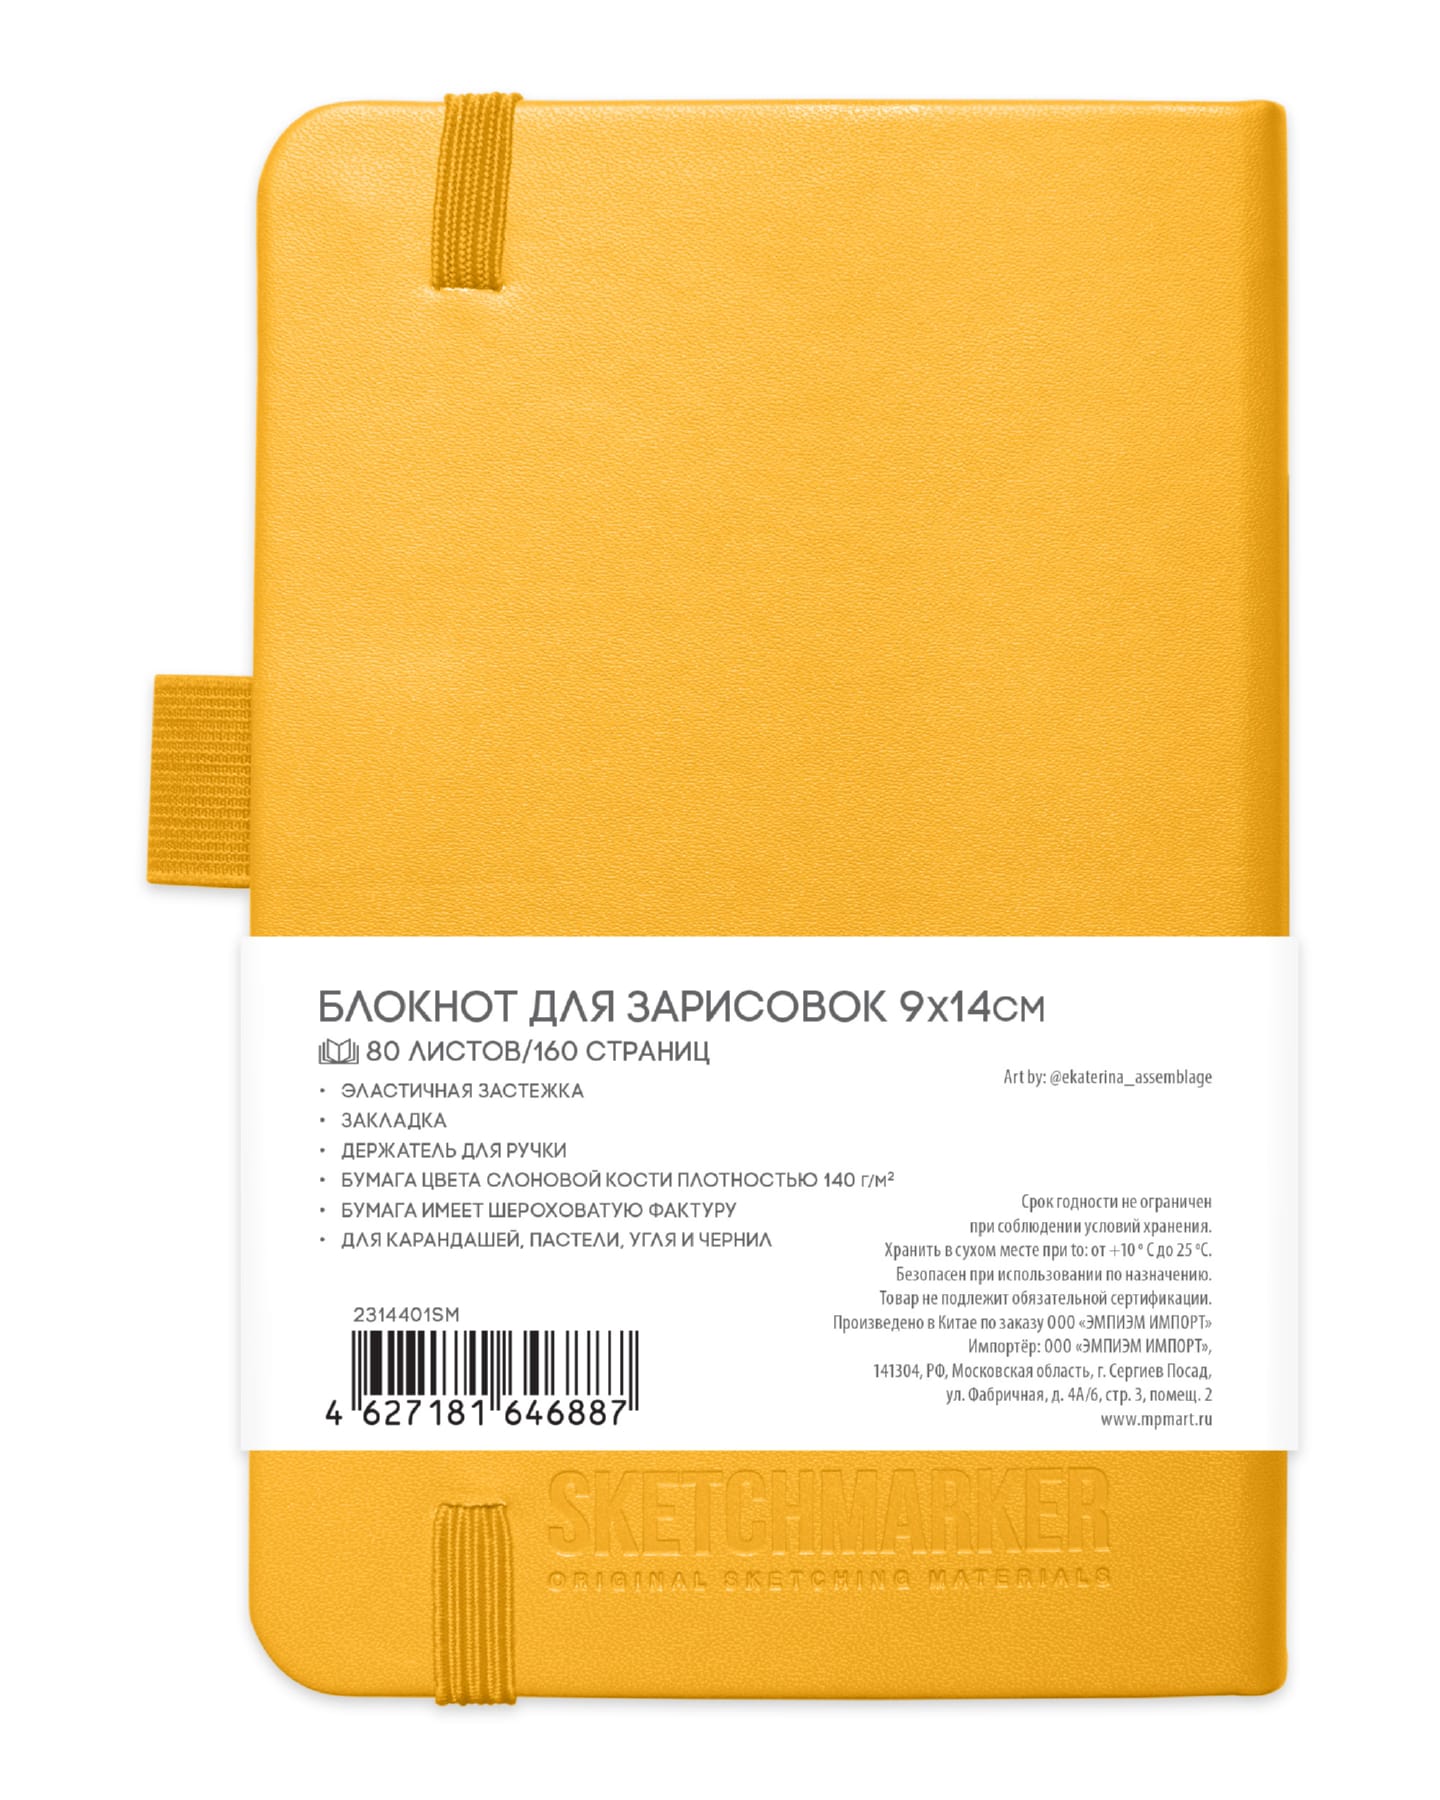 Блокнот для зарисовок Sketchmarker 140г/кв.м 80л твердая обложка Оранжевый 4 размера в ассортименте